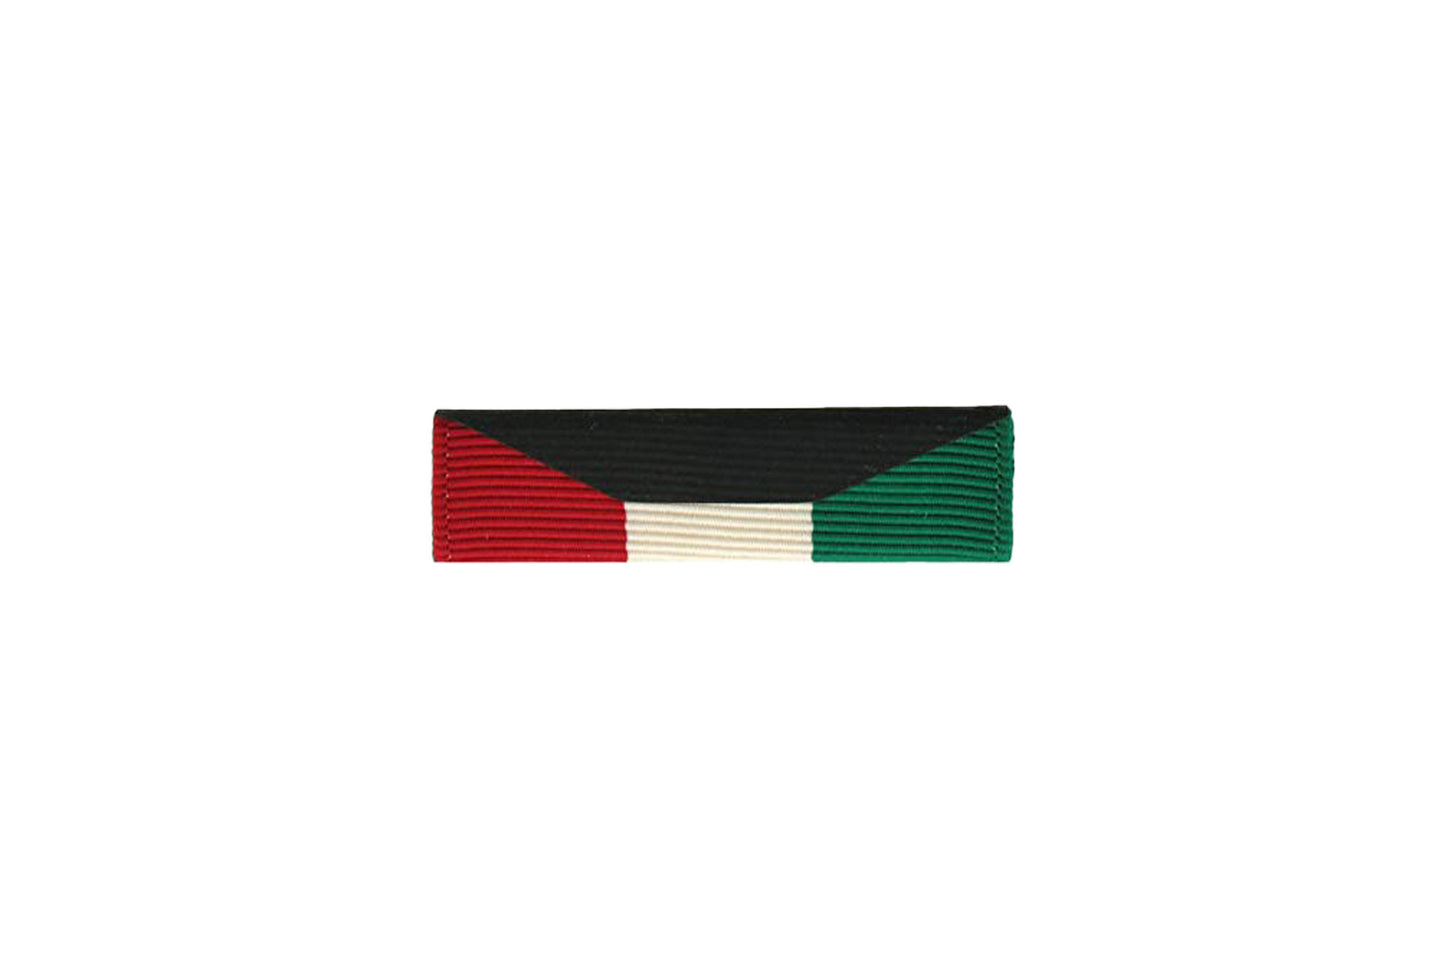 U.S. Army Kuwait Liberation of Kuwait Ribbon (each)